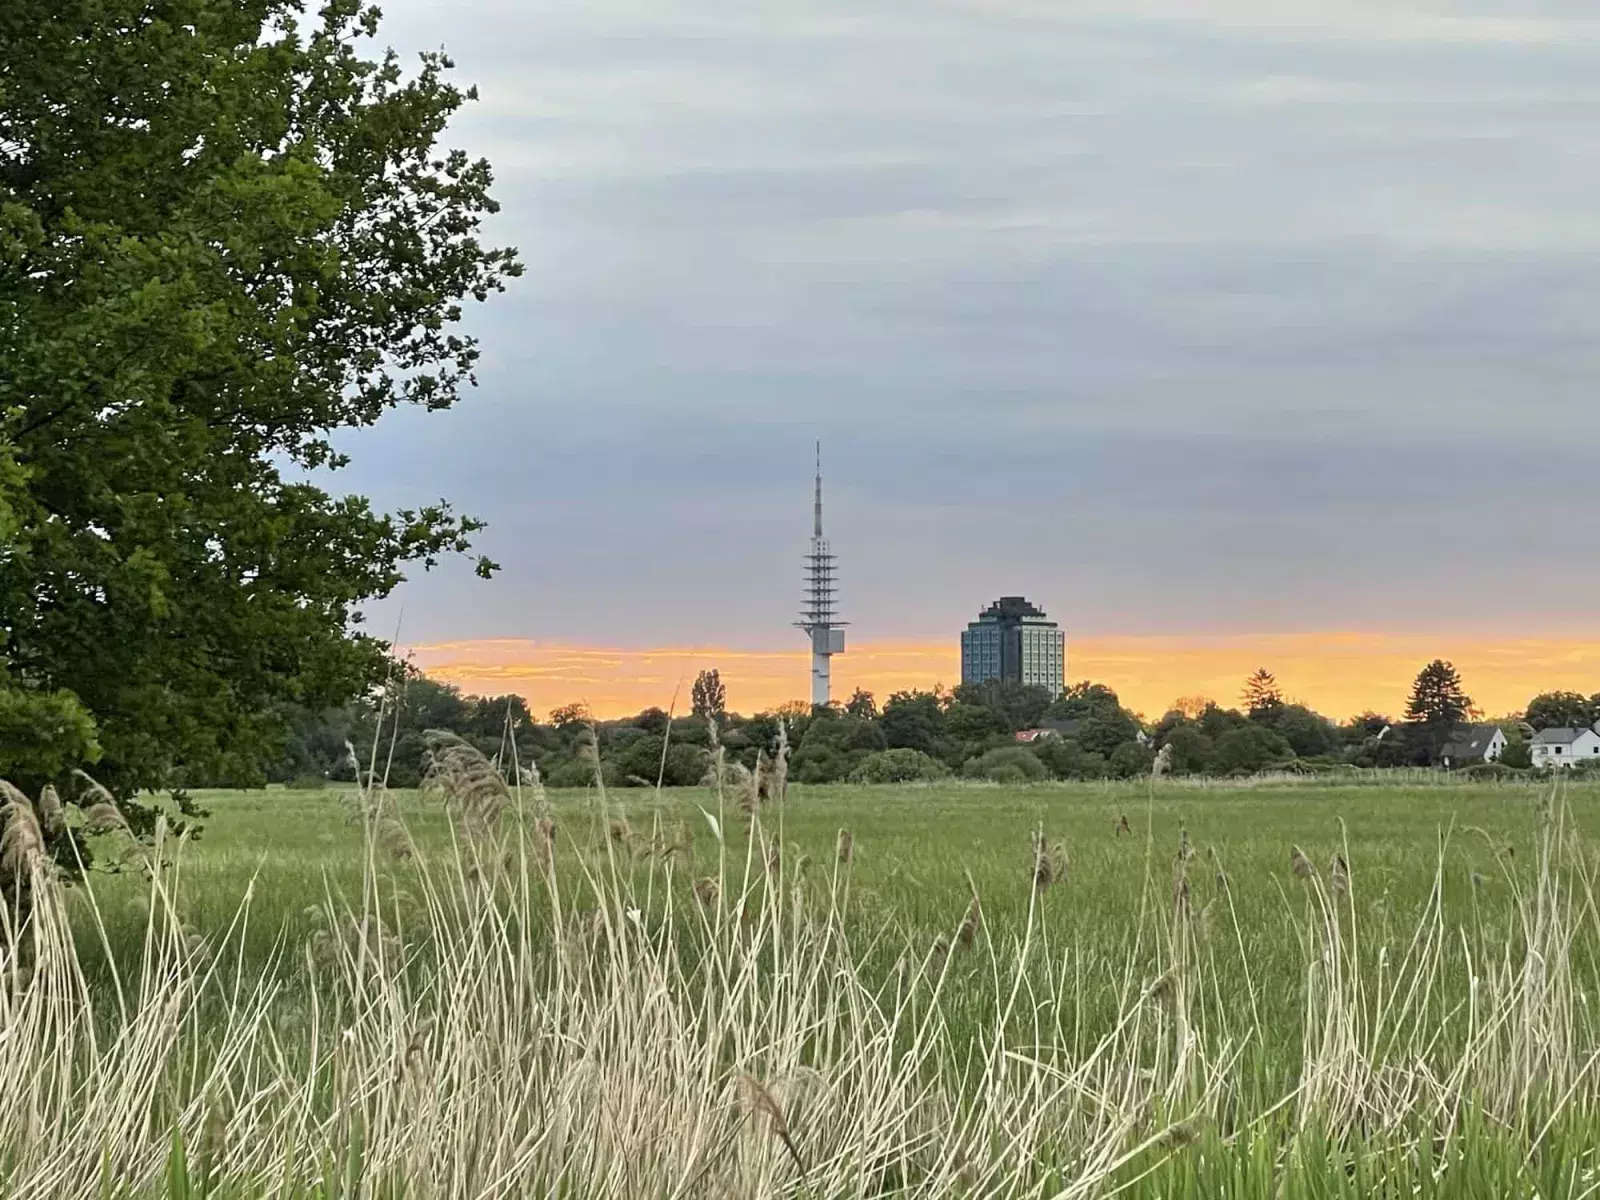 Siluette mit Telemax und Bersdorf-Tower bei orange-gelben Abendrot